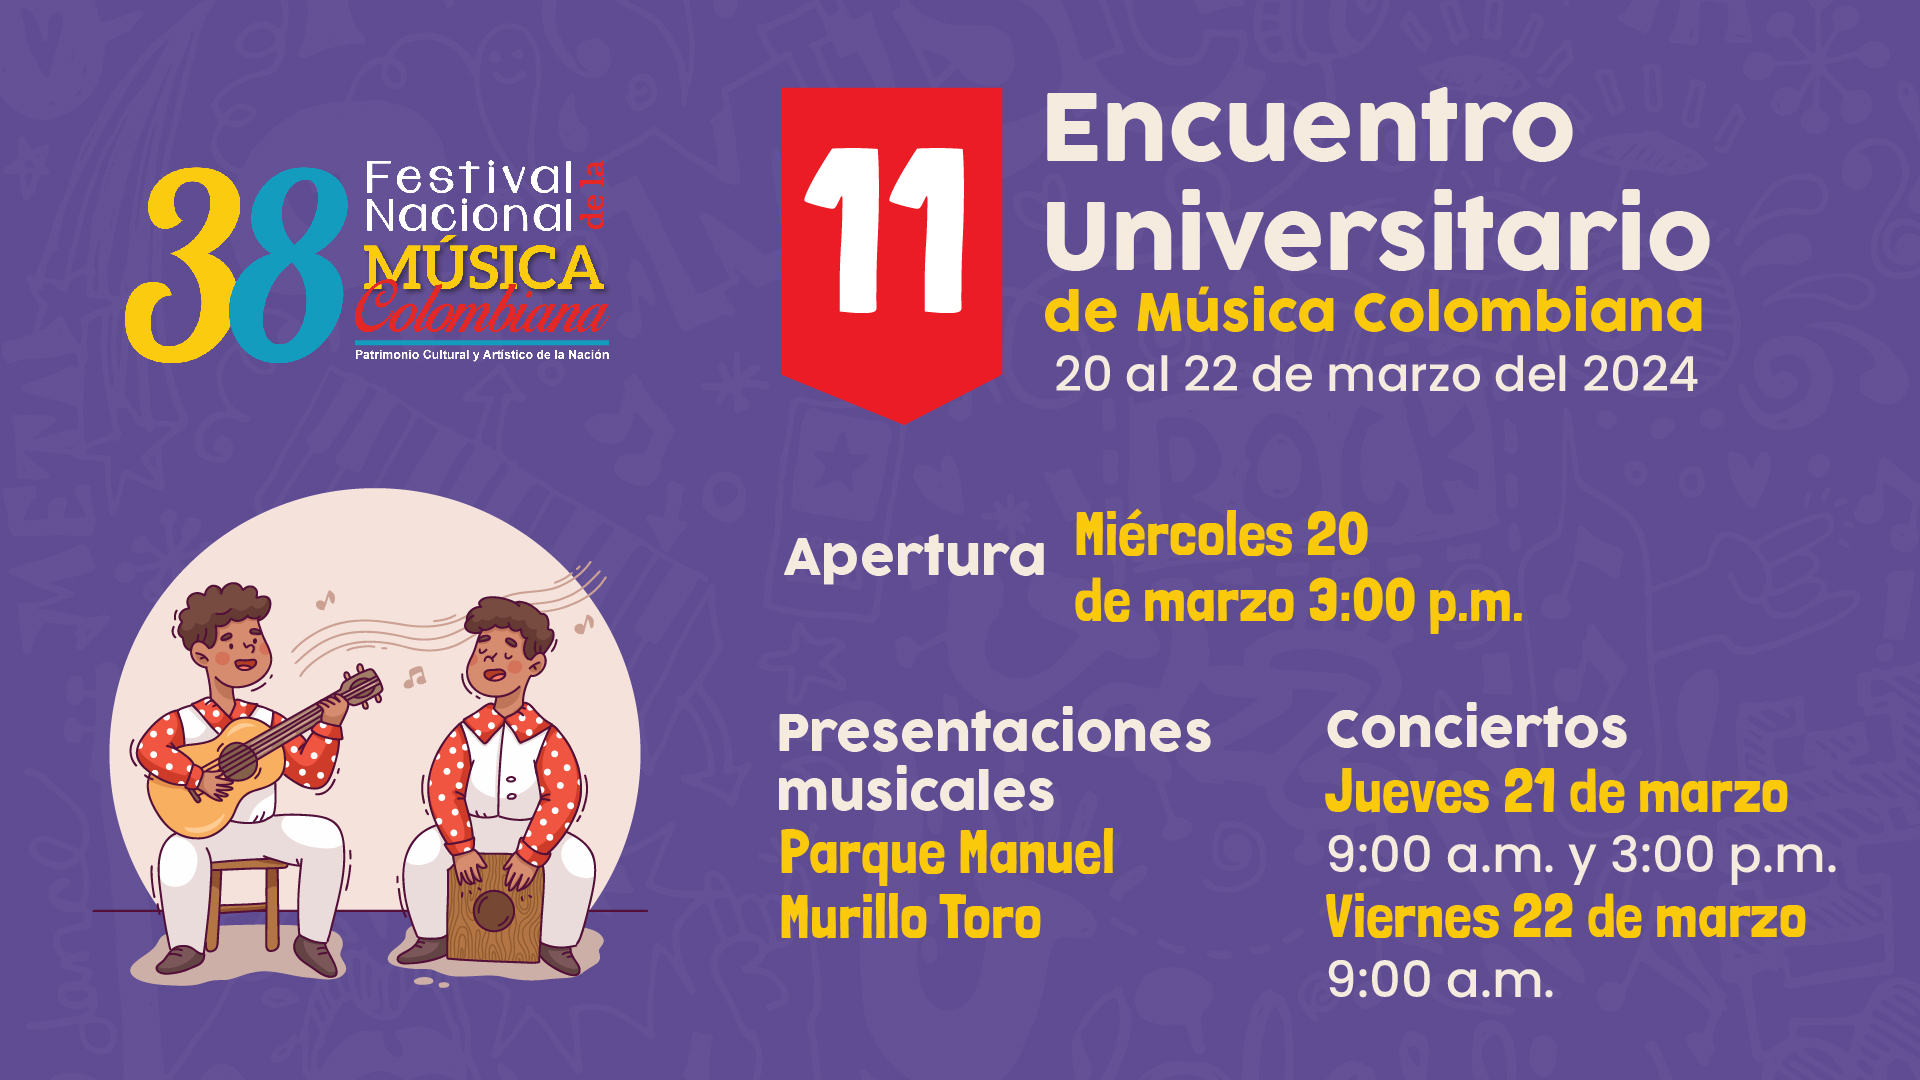 Encuentro Universitario de Música Colombiana